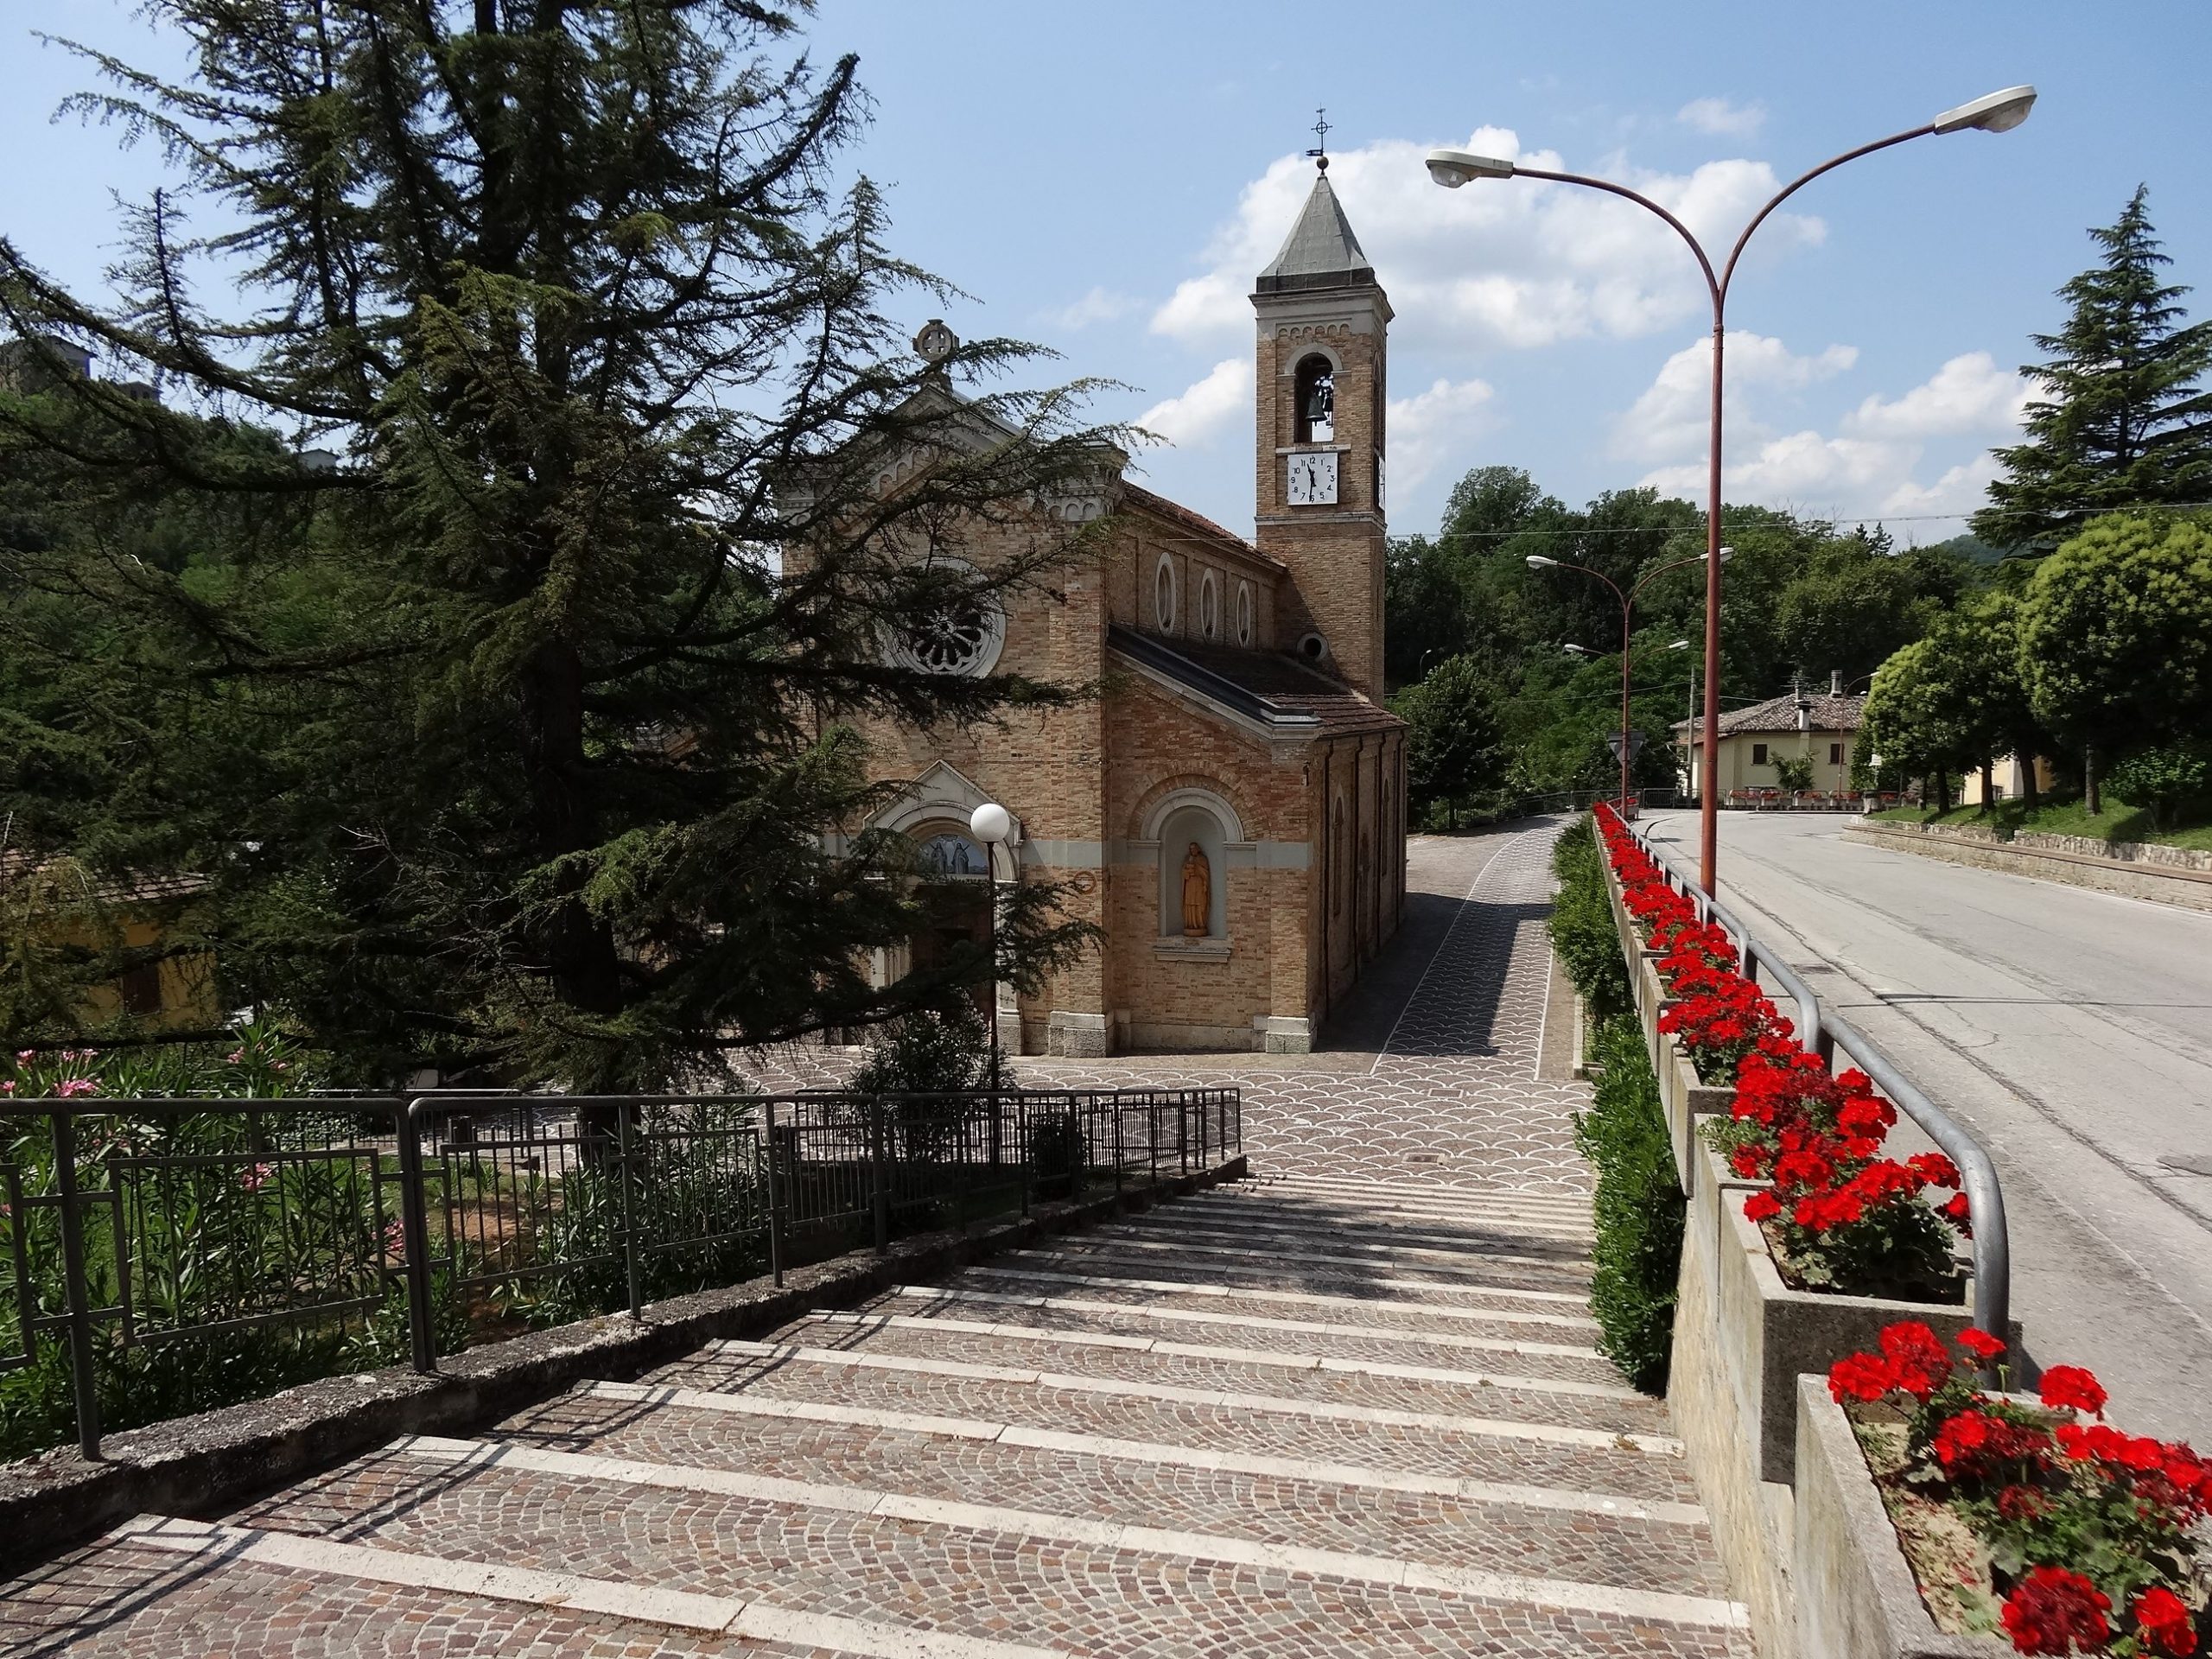 9. Venarotta – Ascoli Piceno